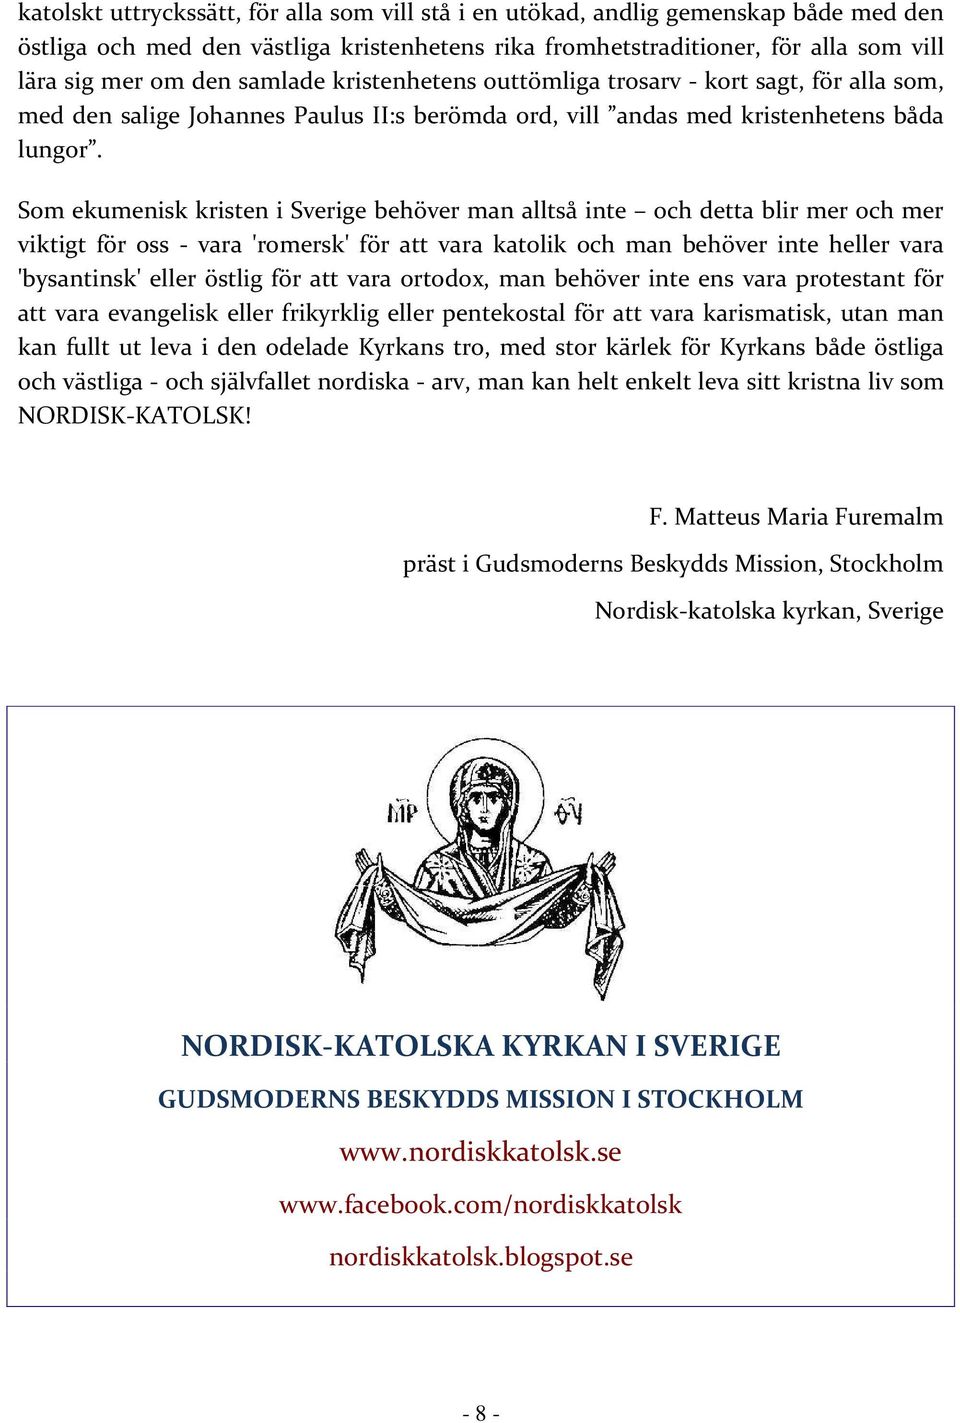 Som ekumenisk kristen i Sverige behöver man alltså inte och detta blir mer och mer viktigt för oss - vara 'romersk' för att vara katolik och man behöver inte heller vara 'bysantinsk' eller östlig för